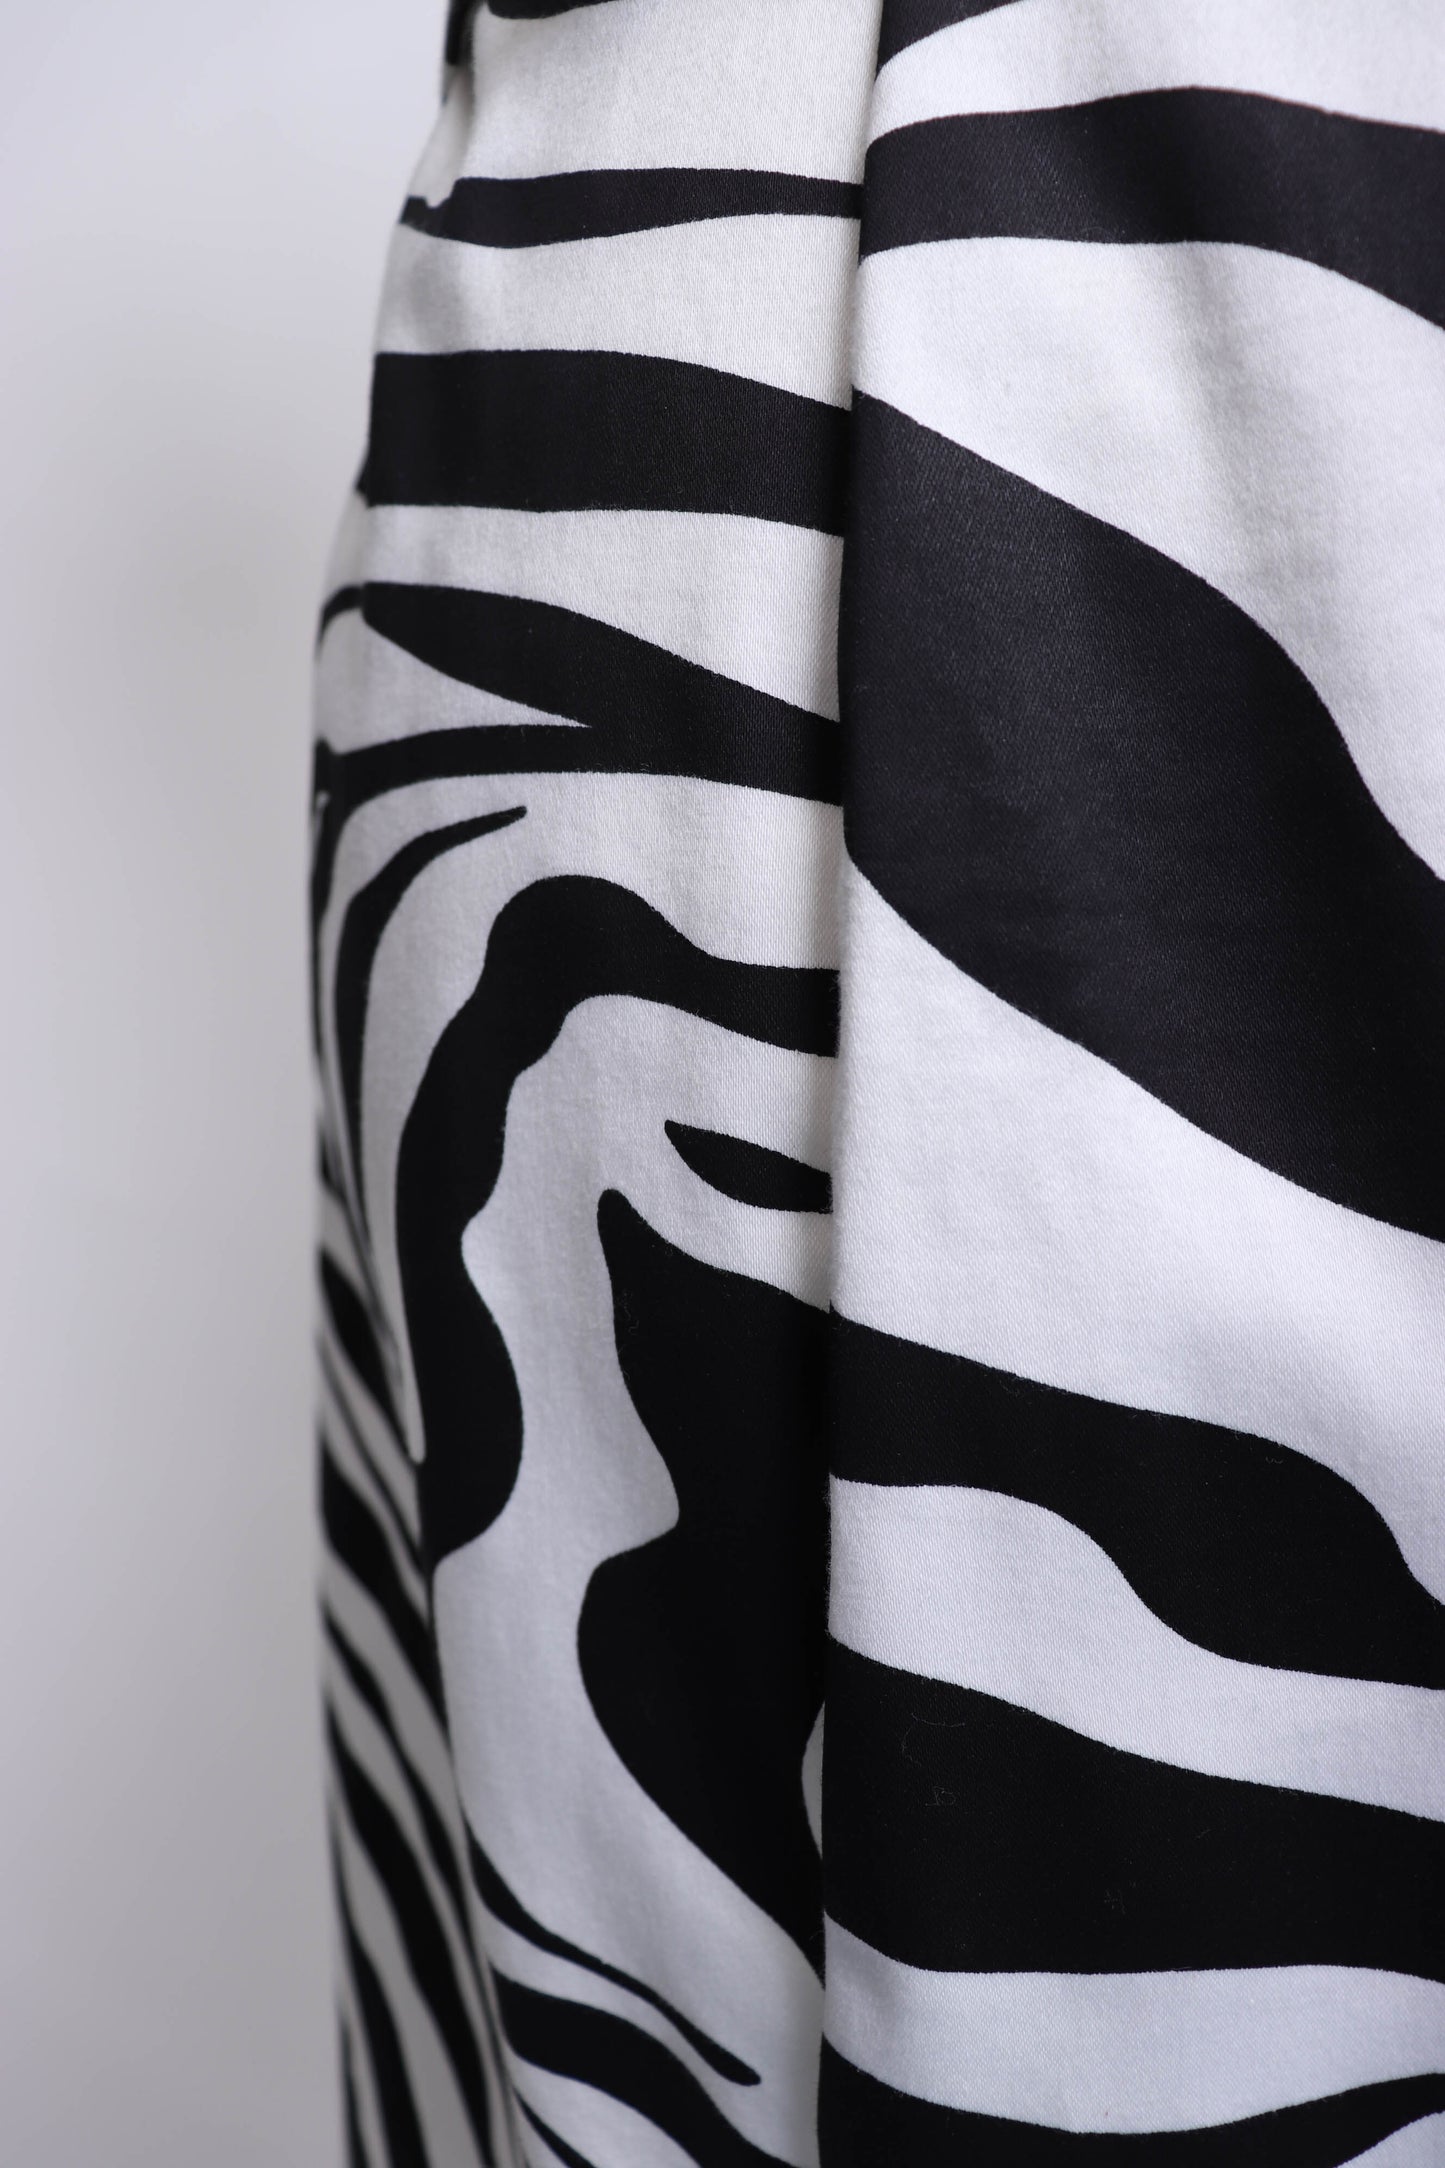 80's Black and White Zebra Print Sleeveless Dress S/M